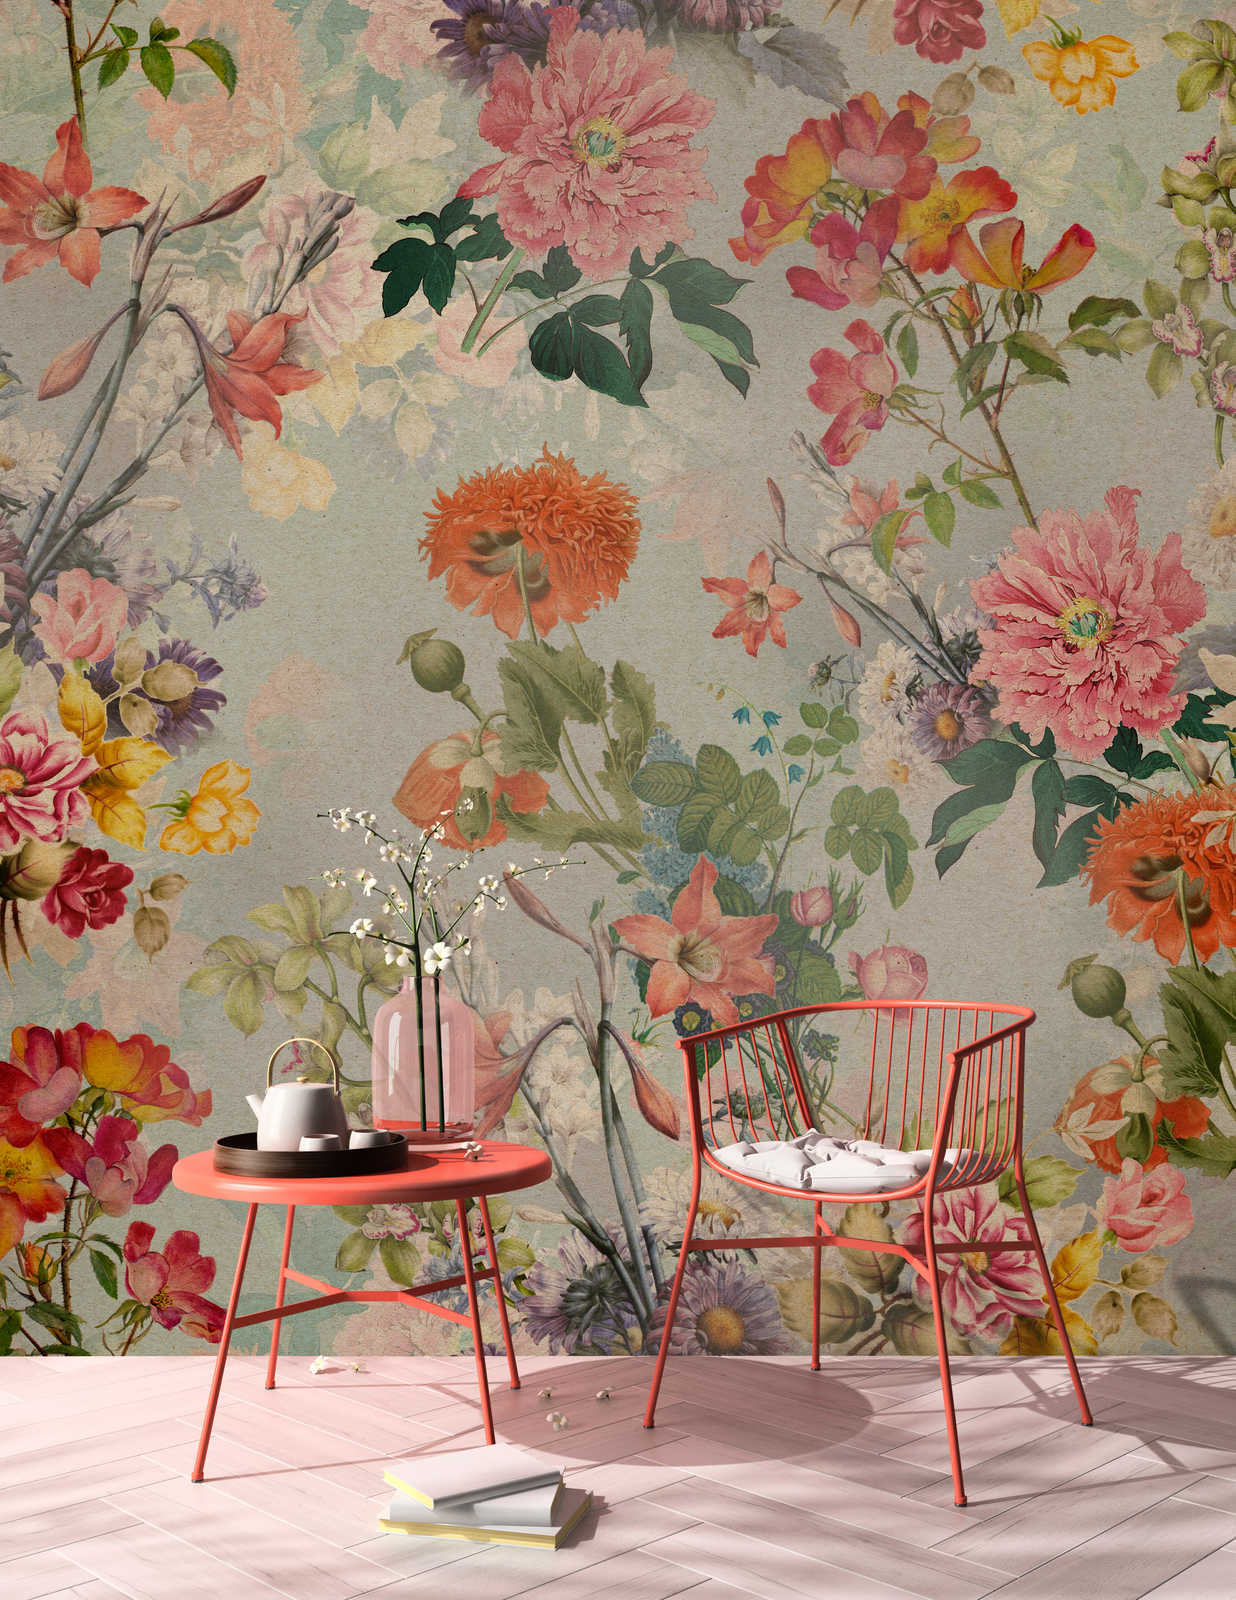             Amelies Home 1 - Papier peint vintage fleuri de style campagnard romantique
        